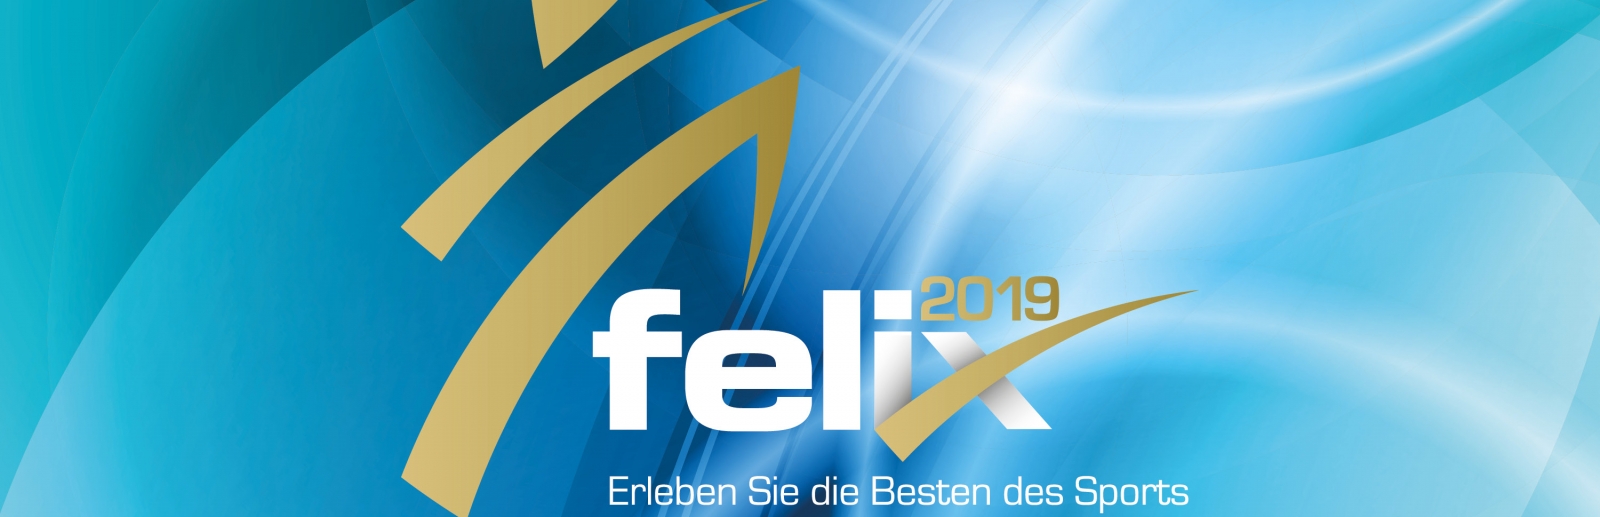 Logo des felix-Award 2019 mit blauem Hintergrund mit weißen Schriftzug und goldenen Farbelementen.